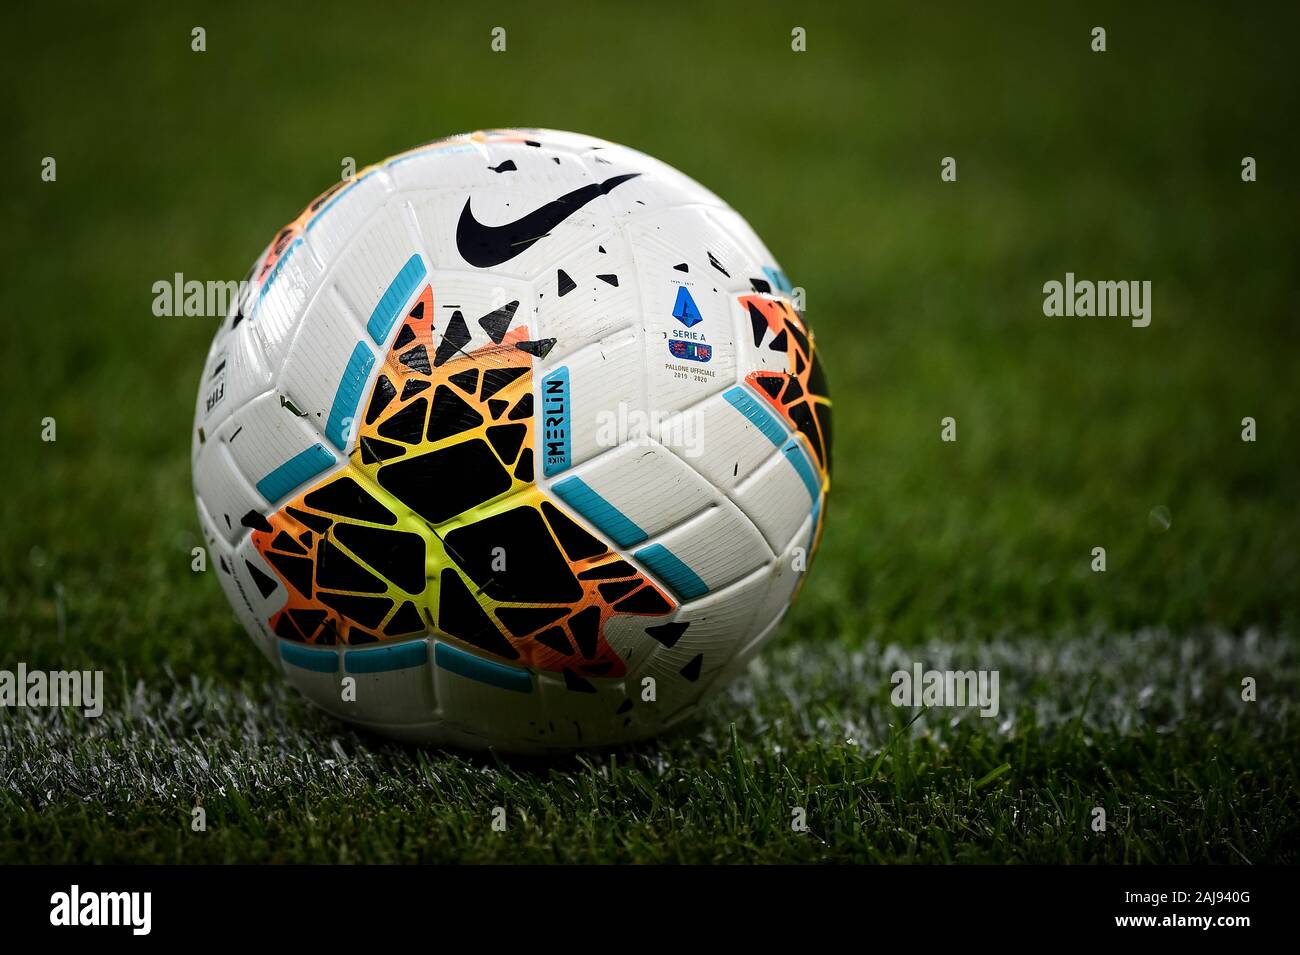 Turín, Italia. El 8 de agosto, 2019: La Serie 2019-2020 oficial un balón  Nike Merlin es retratada antes de la final de la UEFA Europa League tercera  ronda clasificatoria del partido de